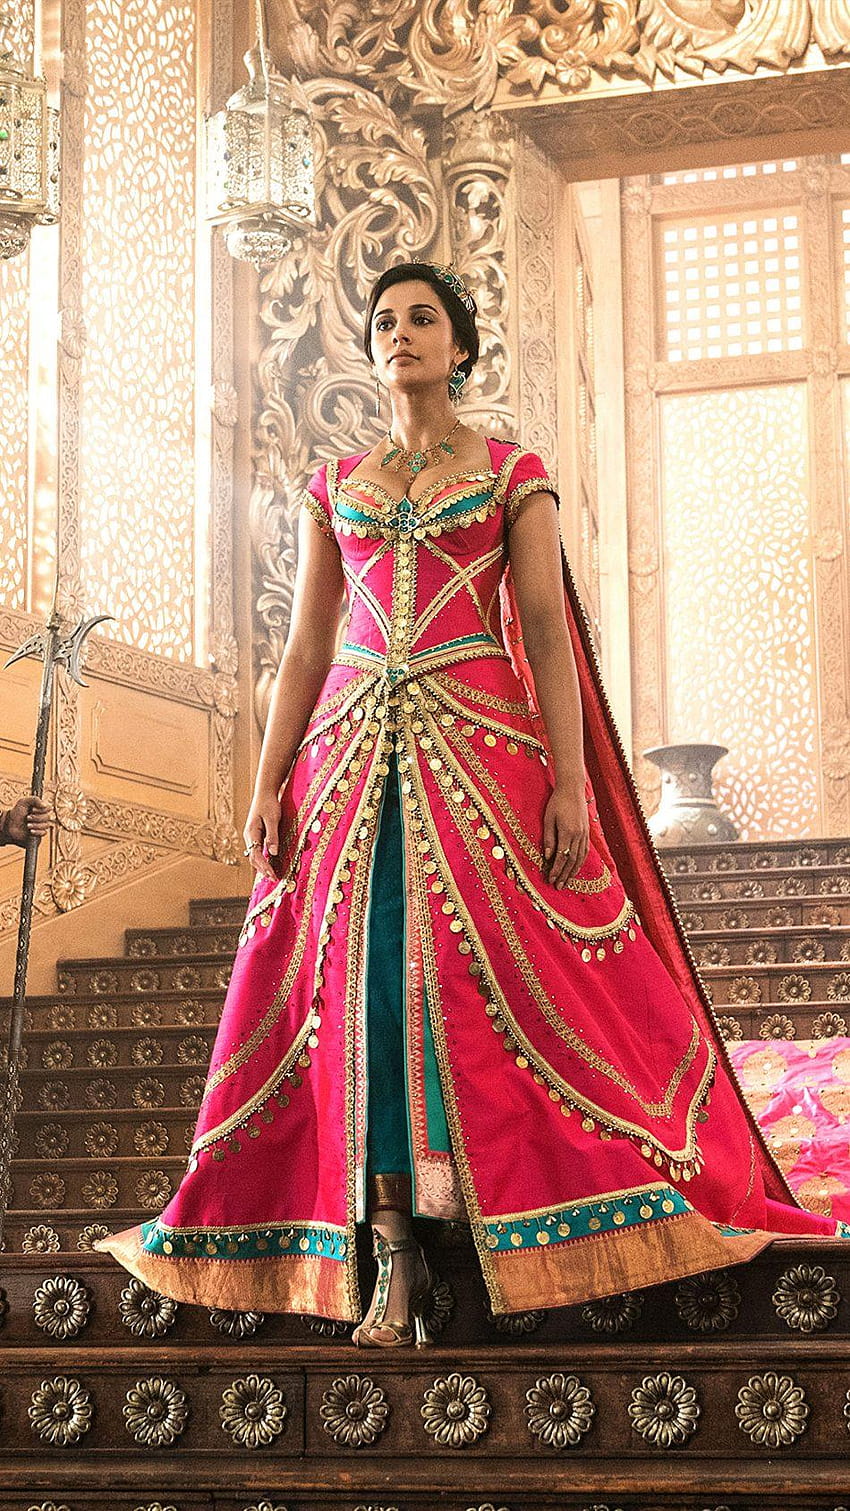 Princess Jasmine In Aladdin Naomi Scott HD Phone Wallpaper Pxfuel